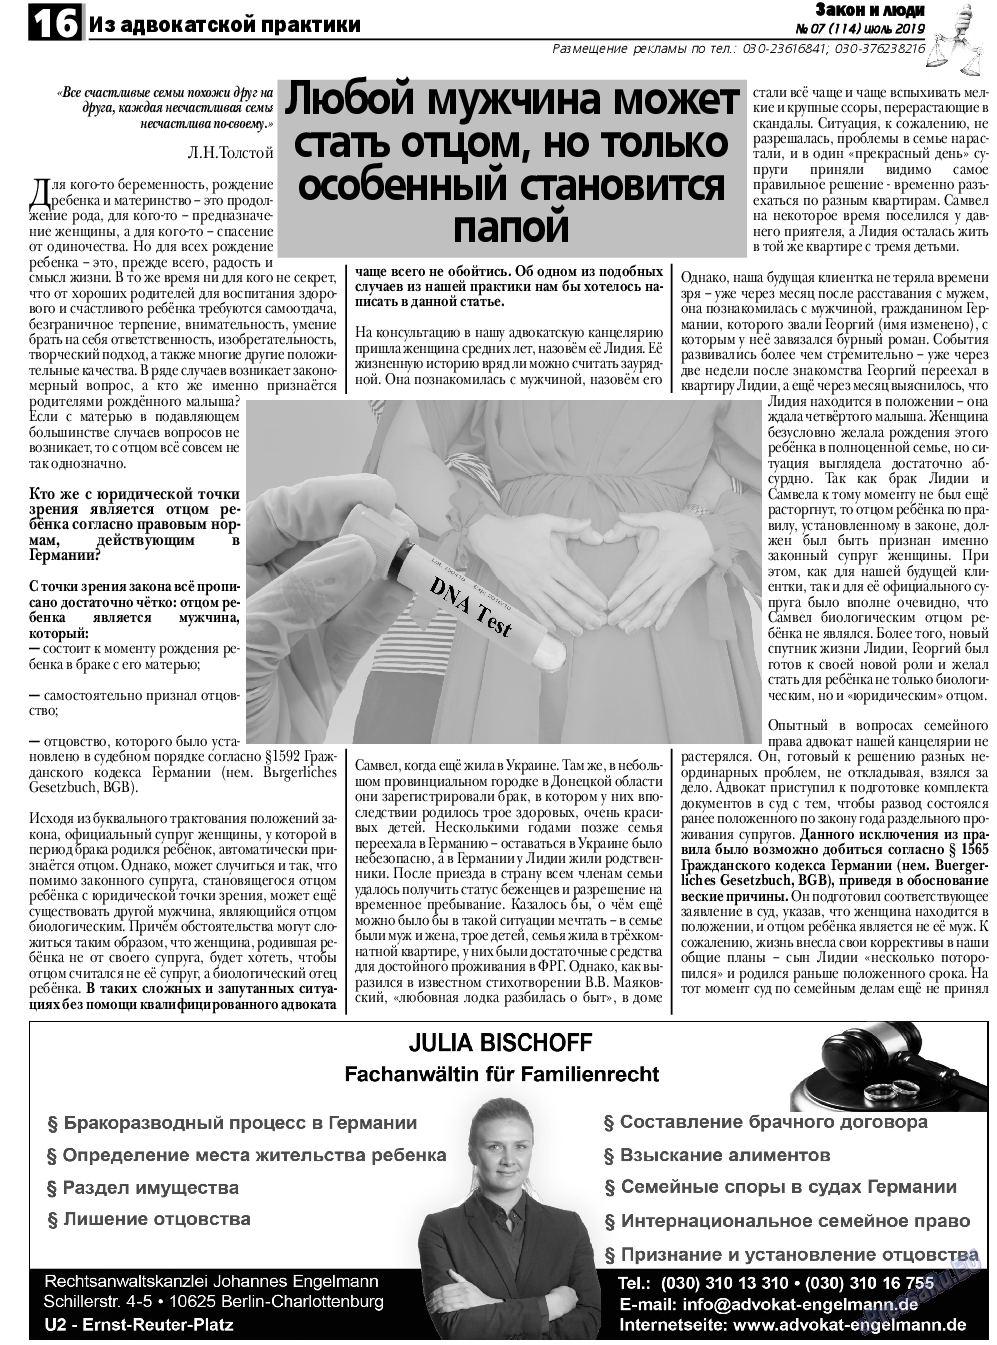 Закон и люди, газета. 2019 №7 стр.16